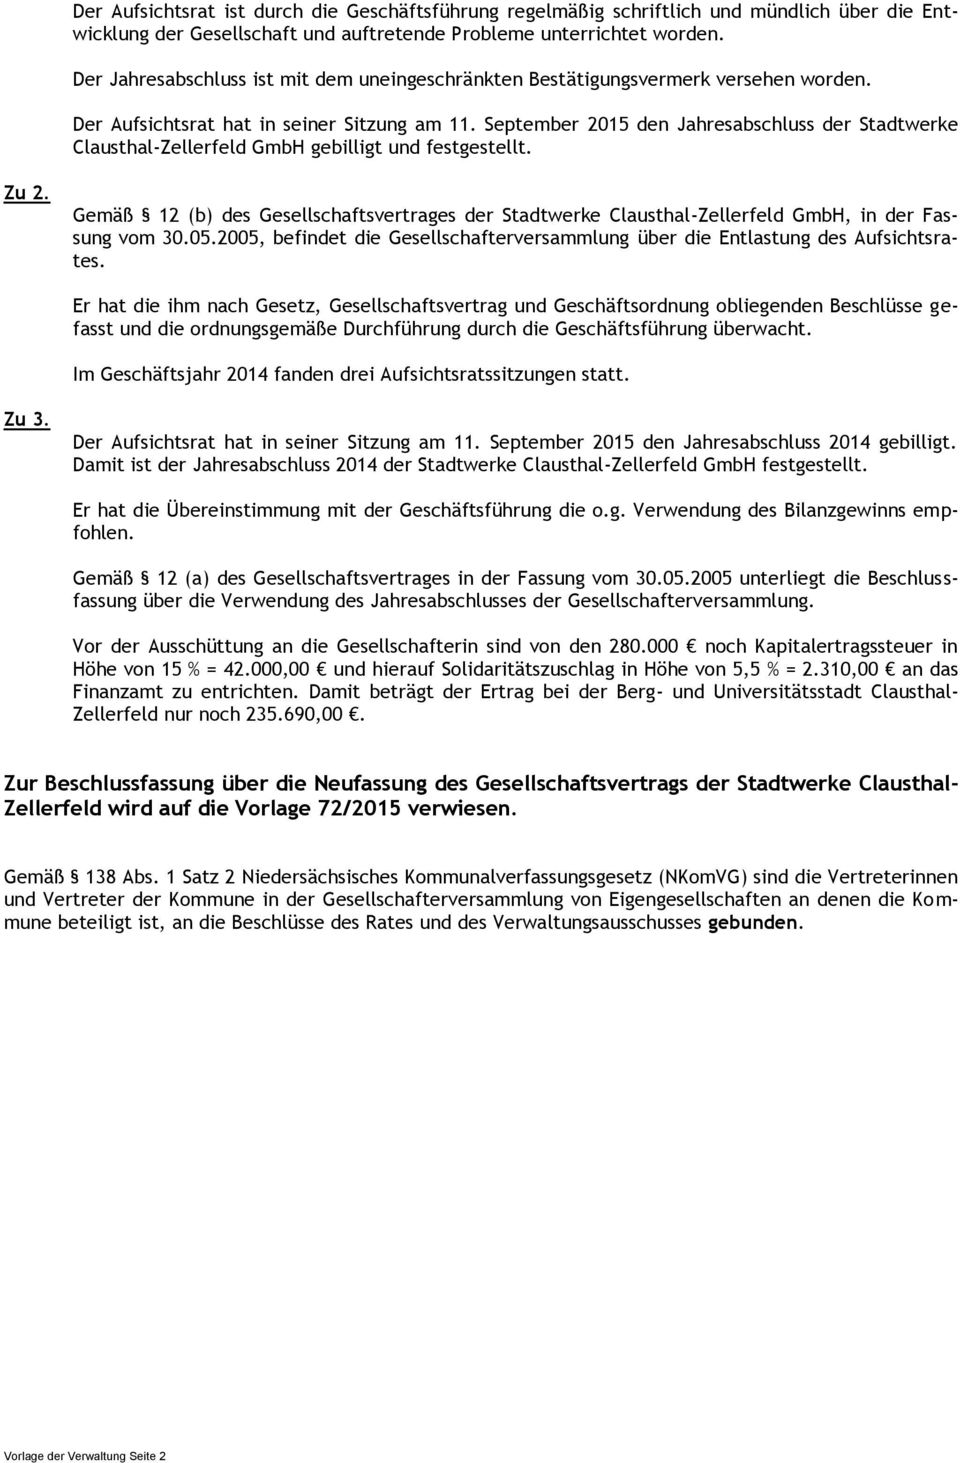 September 2015 den Jahresabschluss der Stadtwerke Clausthal-Zellerfeld GmbH gebilligt und festgestellt. Zu 2.